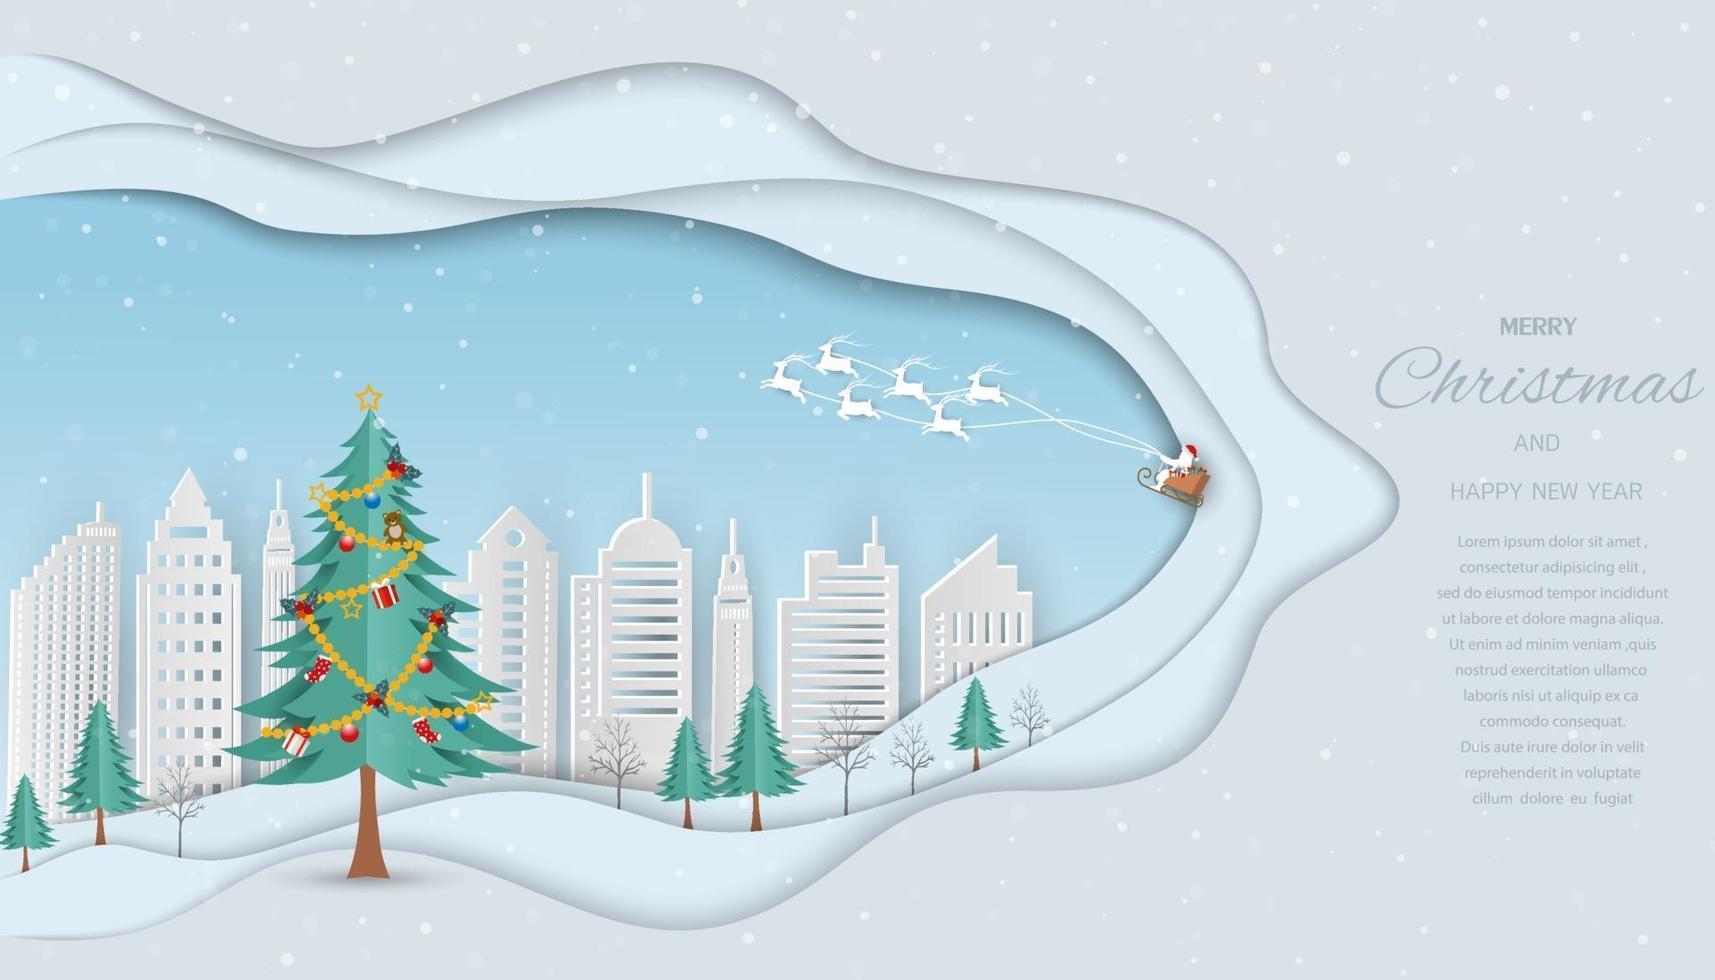 god jul och gott nytt år gratulationskort, jultomten kommer till den vita staden med presentaskar på vinterbakgrund vektor